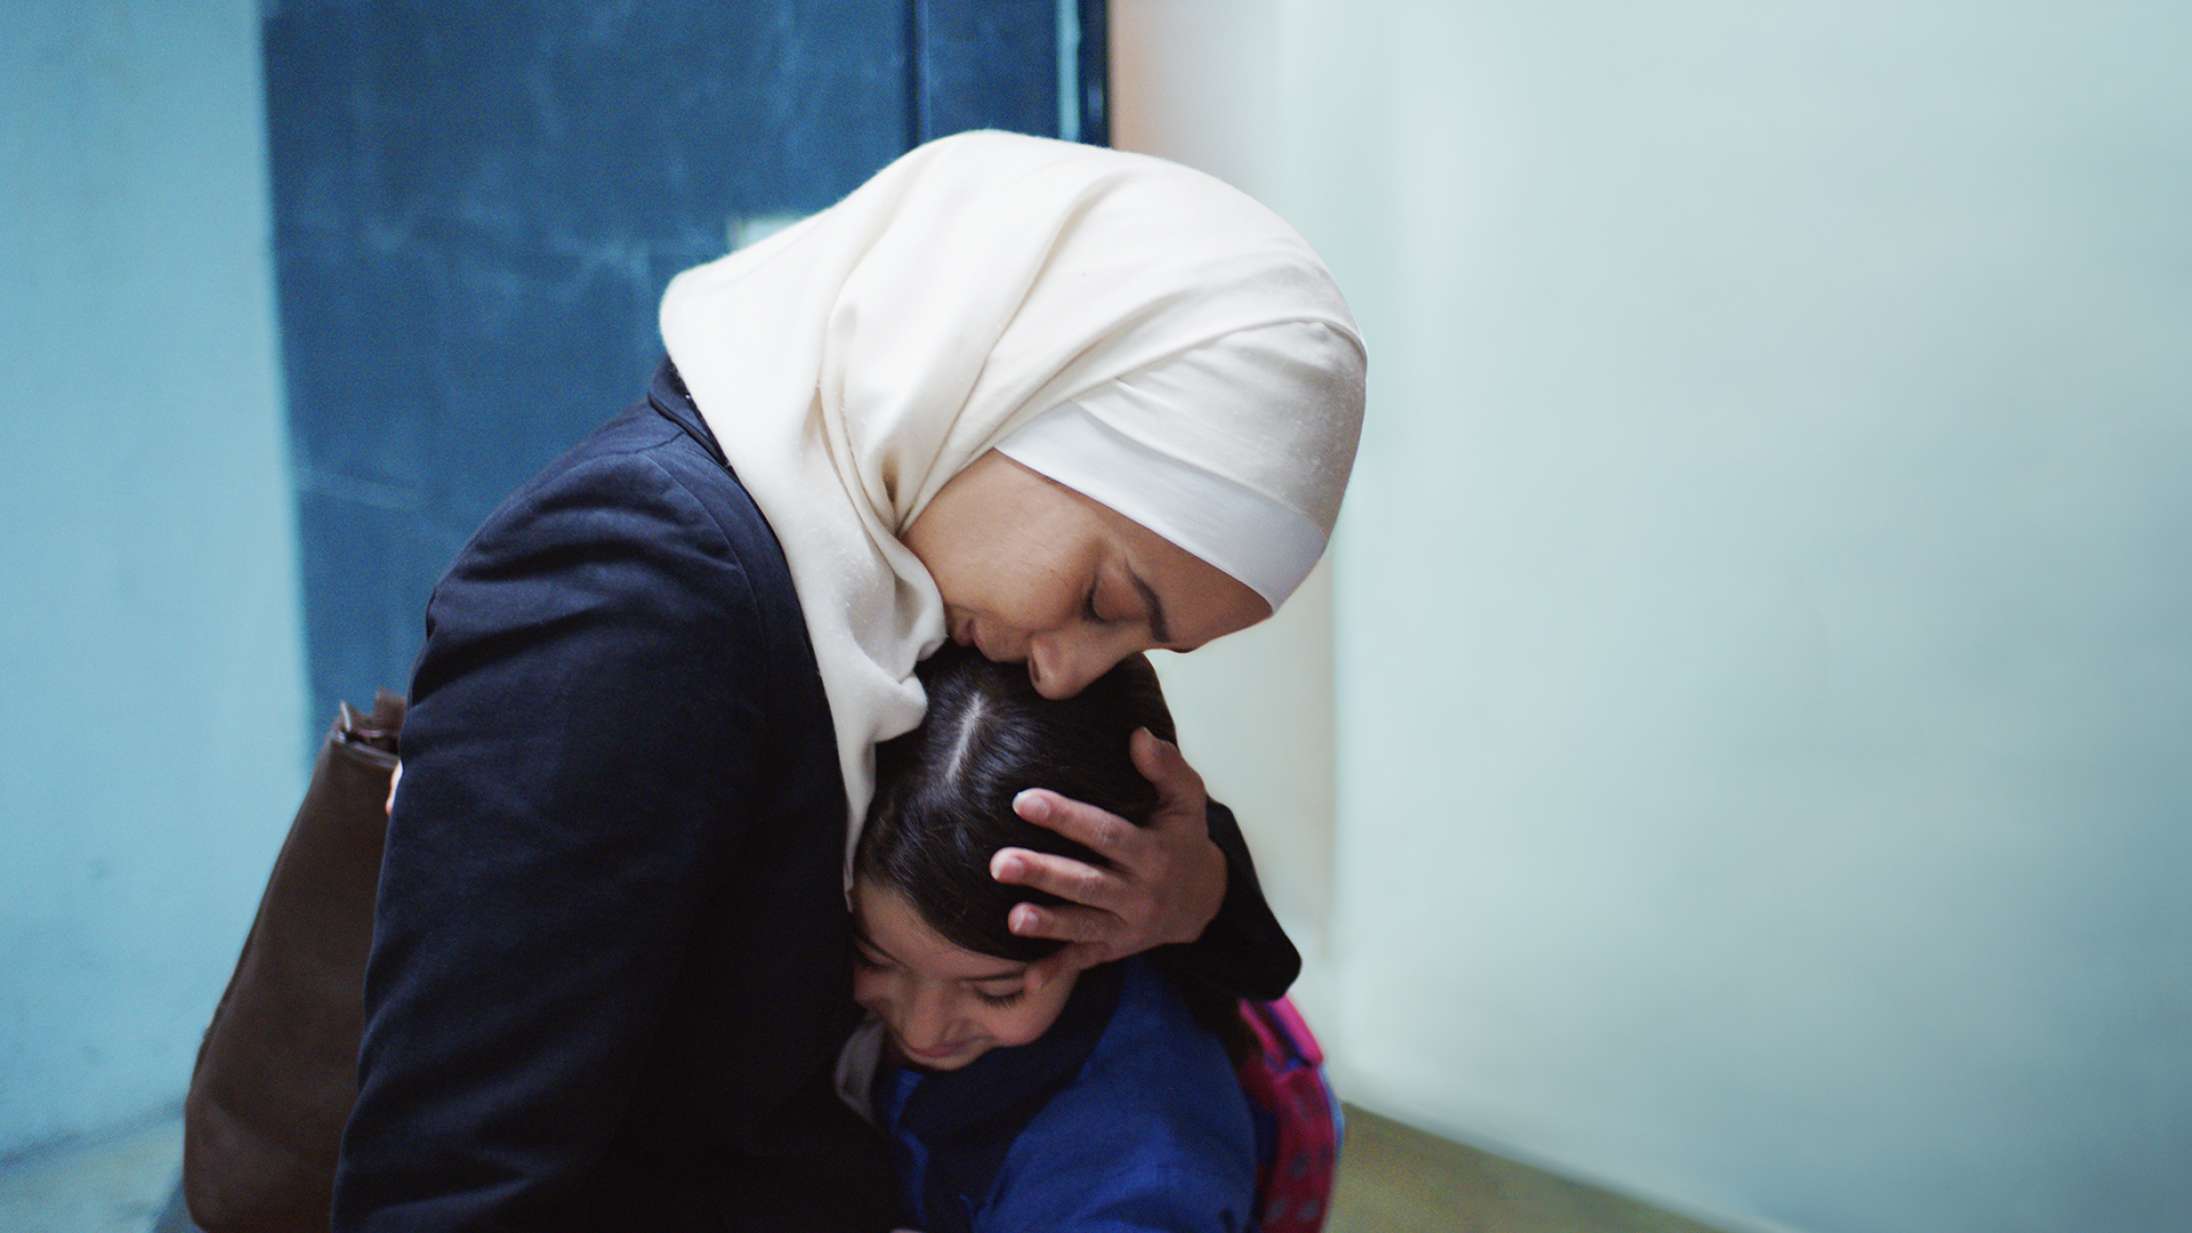 ’Inshallah en dreng’: Knugende film om undertrykkelse sætter et nyt filmland på kortet